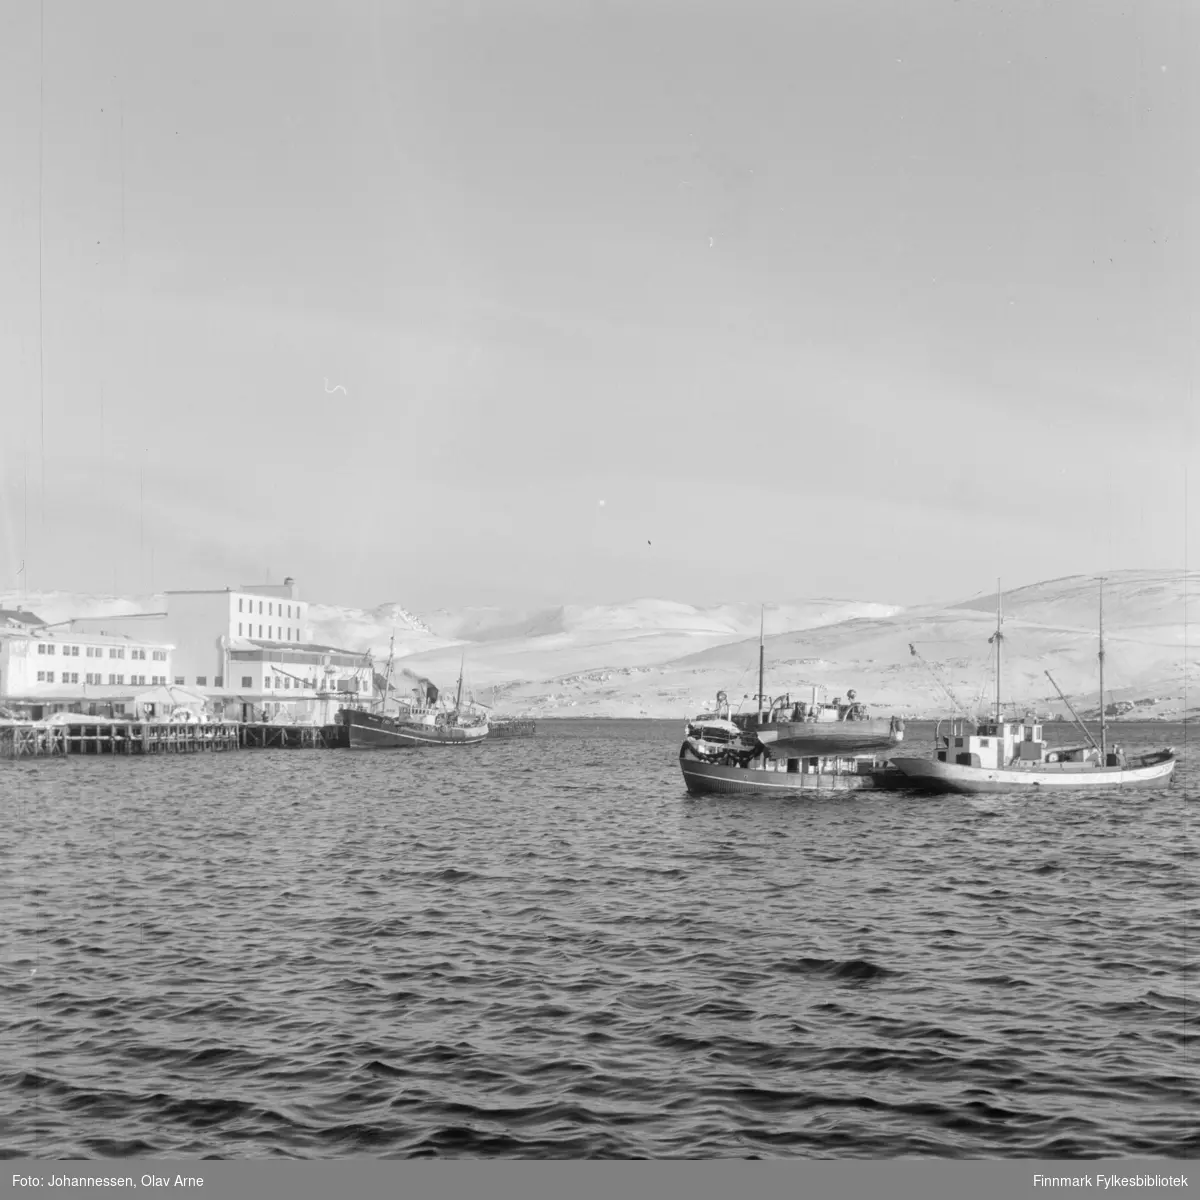 Dampbåt ved gamle DS kai. (til venstre)

Foto av flere fiskeskuter på havet. Til venstre kan man se en kai og bygninger. I bakgrunnen snødekte fjell